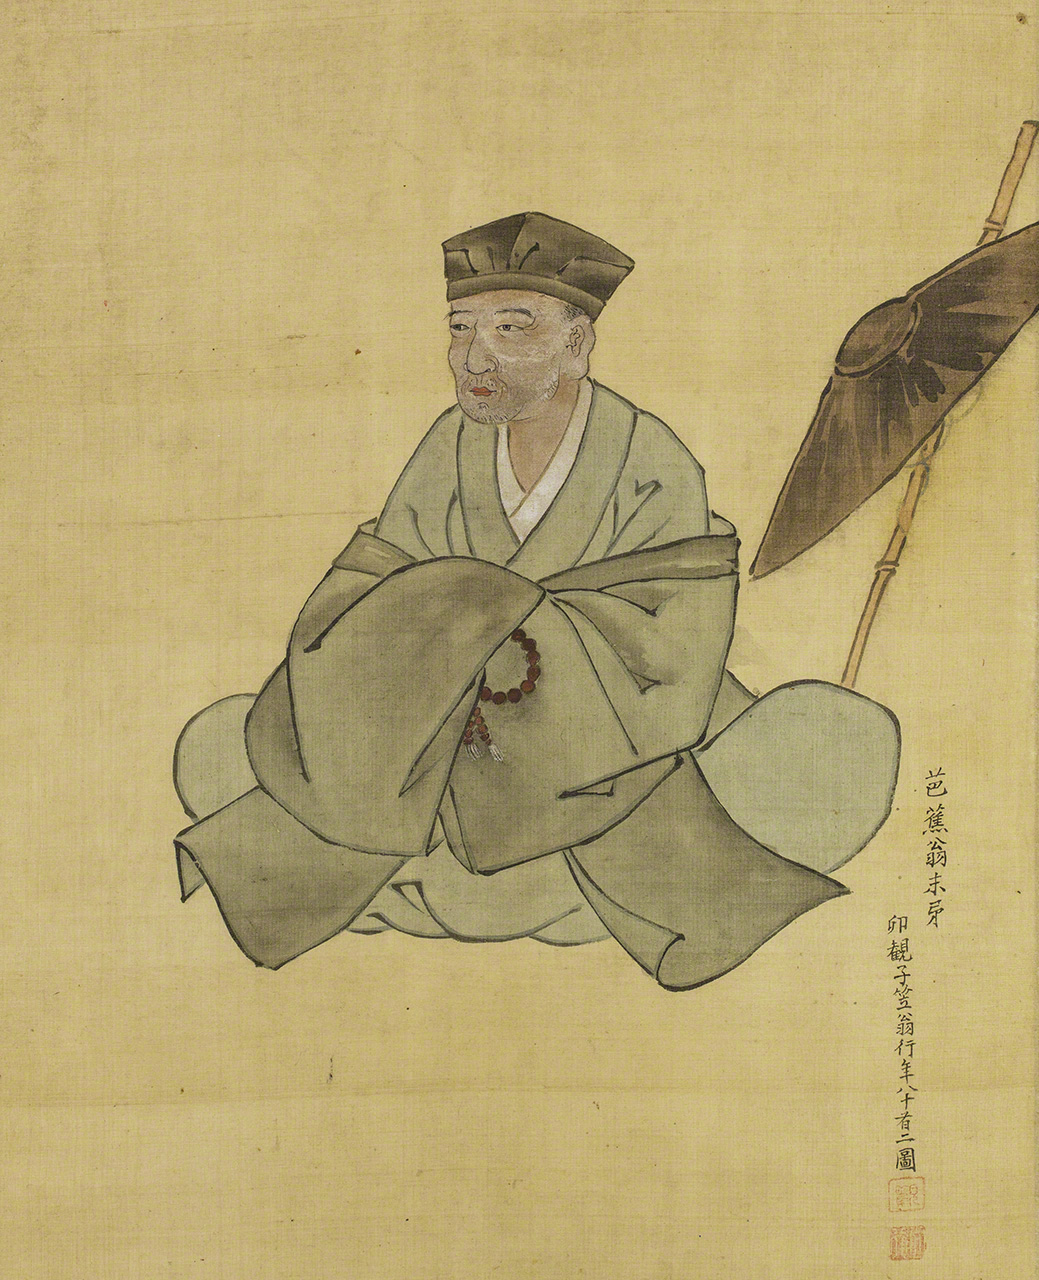 小川破笠（おがわ・はりつ）筆・芭蕉翁像。破笠は江戸中期の絵師・漆工で、芭蕉の門人。親しく接して描かれた肖像画である。芭蕉翁記念館蔵